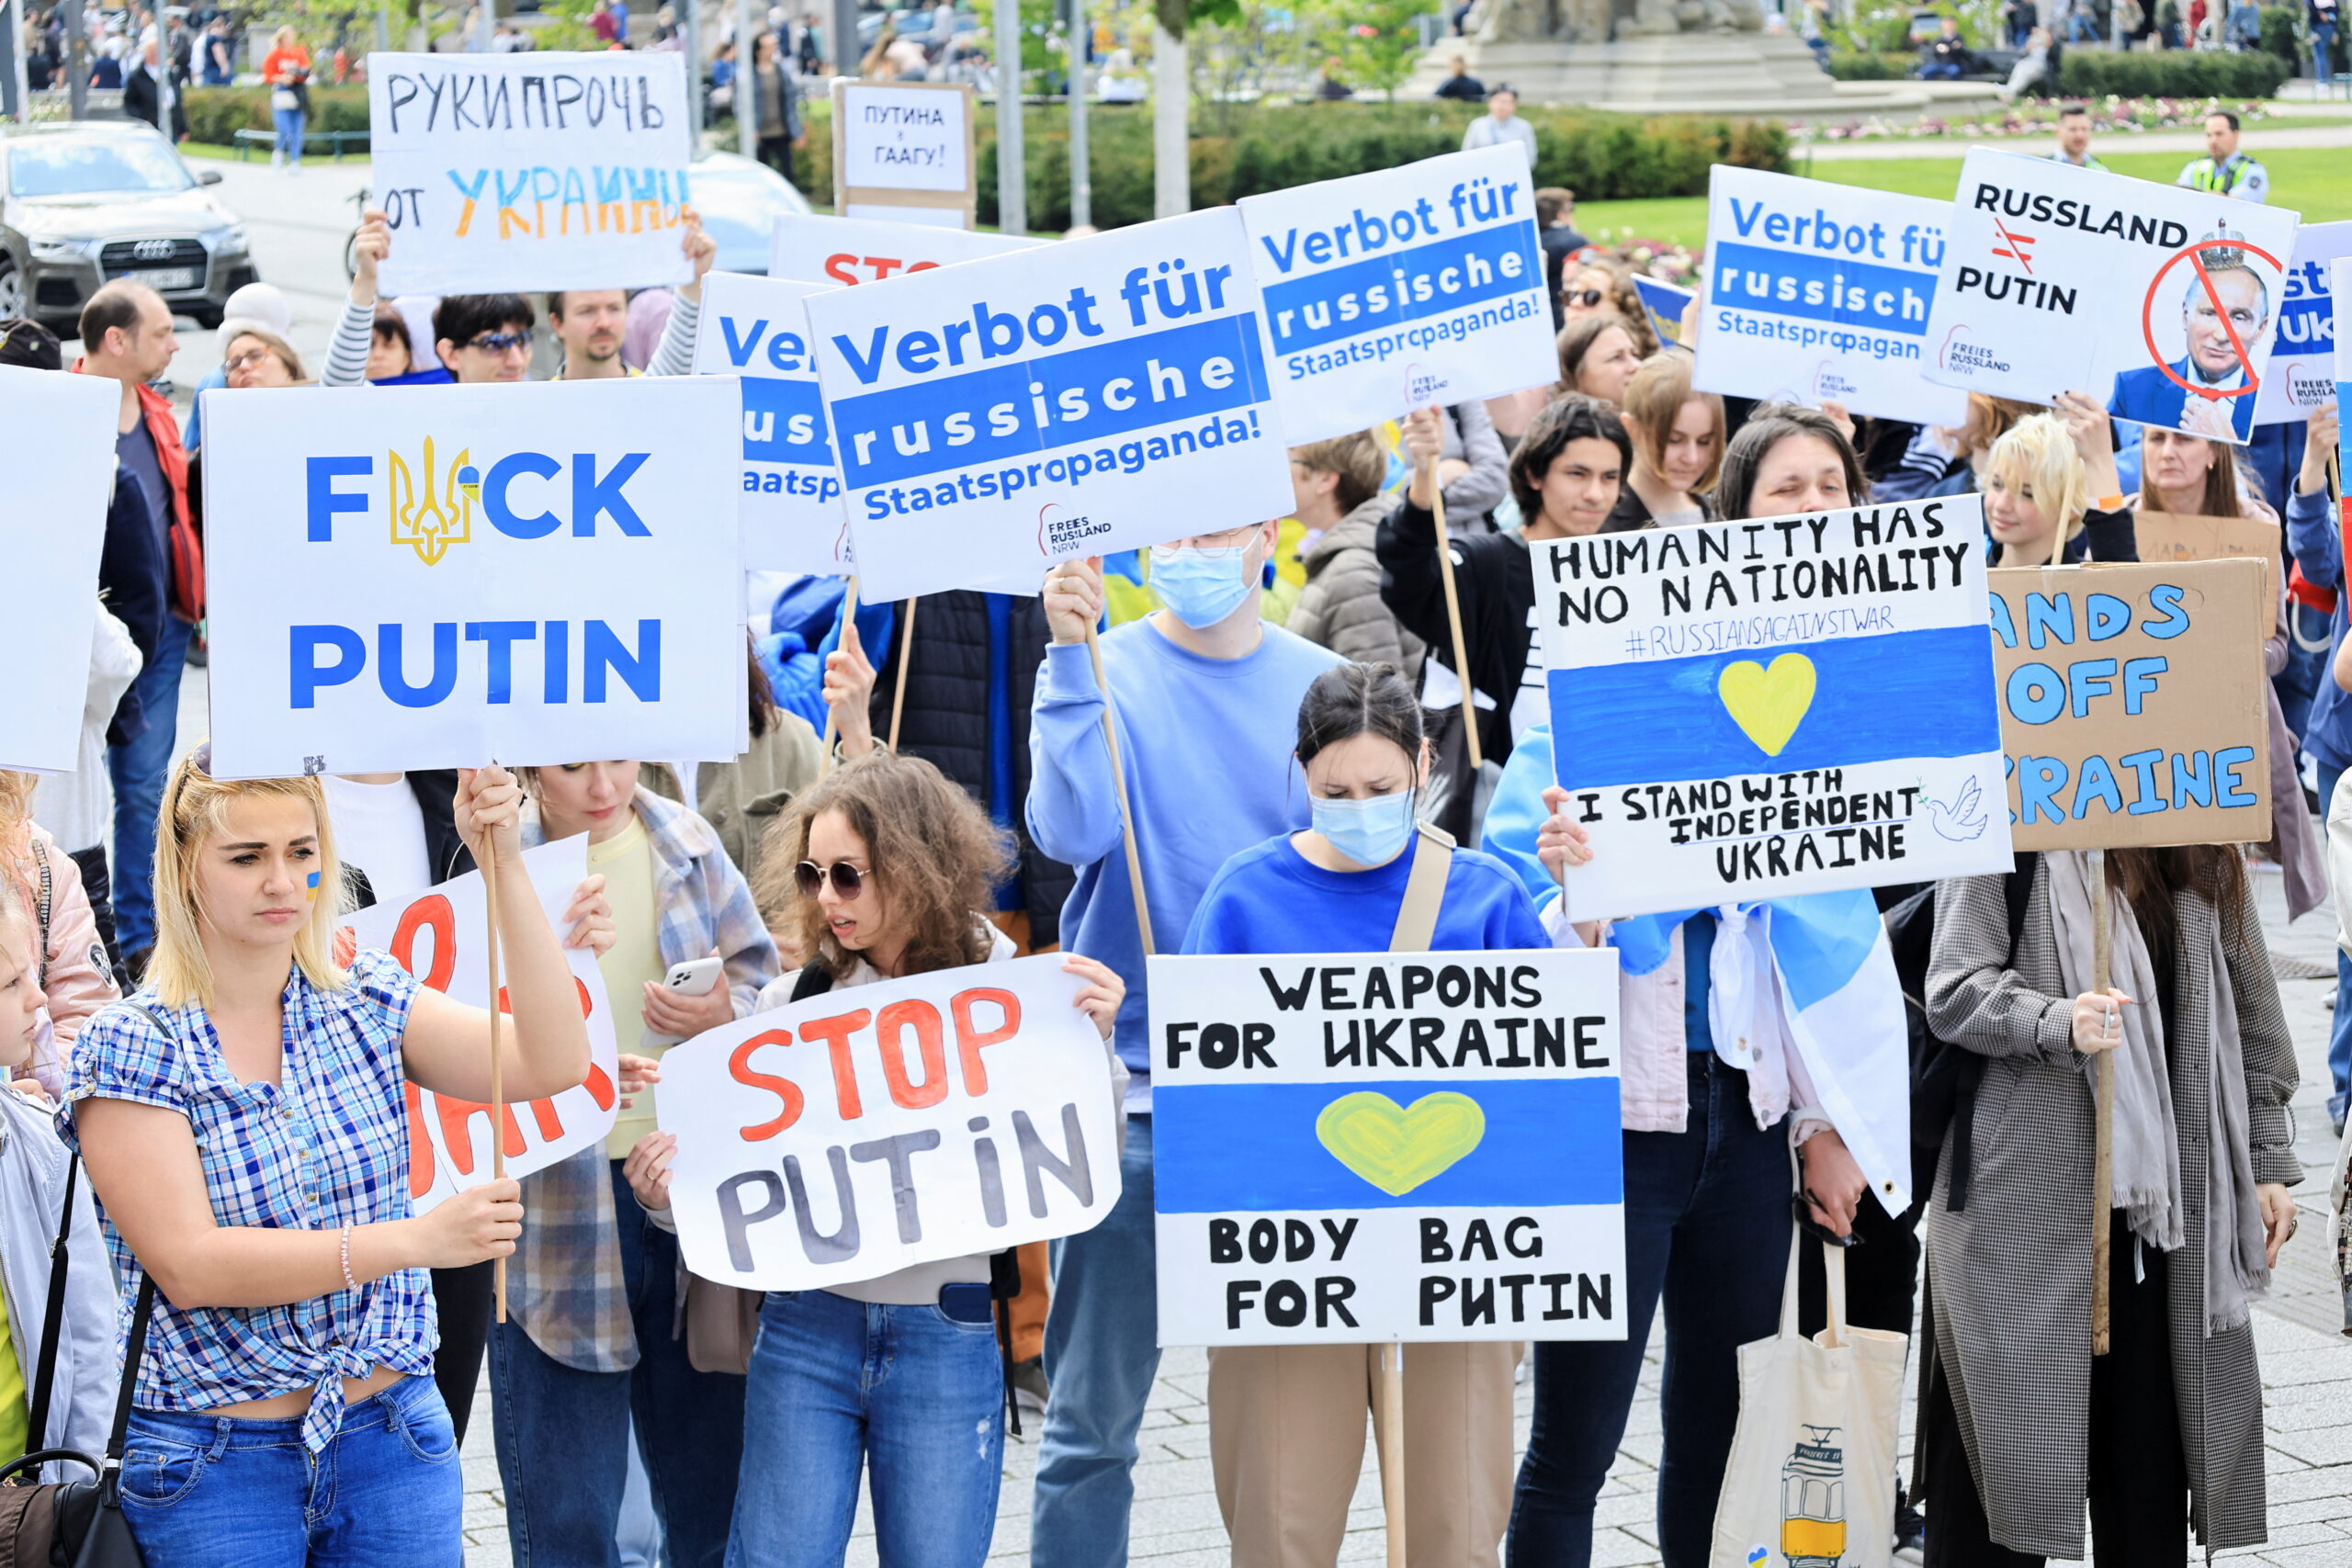 Антивоенный митинг «Русские против войны» в Дюссельдорфе. Германия. 23 апреля 2022 года. Фото REUTERS/Wolfgang Rattay/Scanpix/LETA